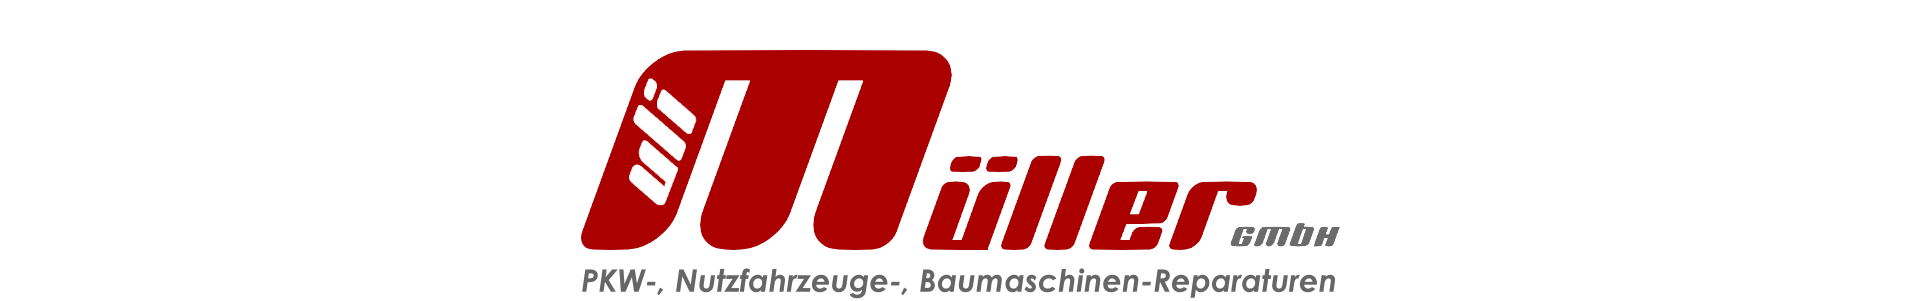 Uli Müller GmbH - PKW-, Nutzfahrzeuge-, Baumaschinen-Reparaturen